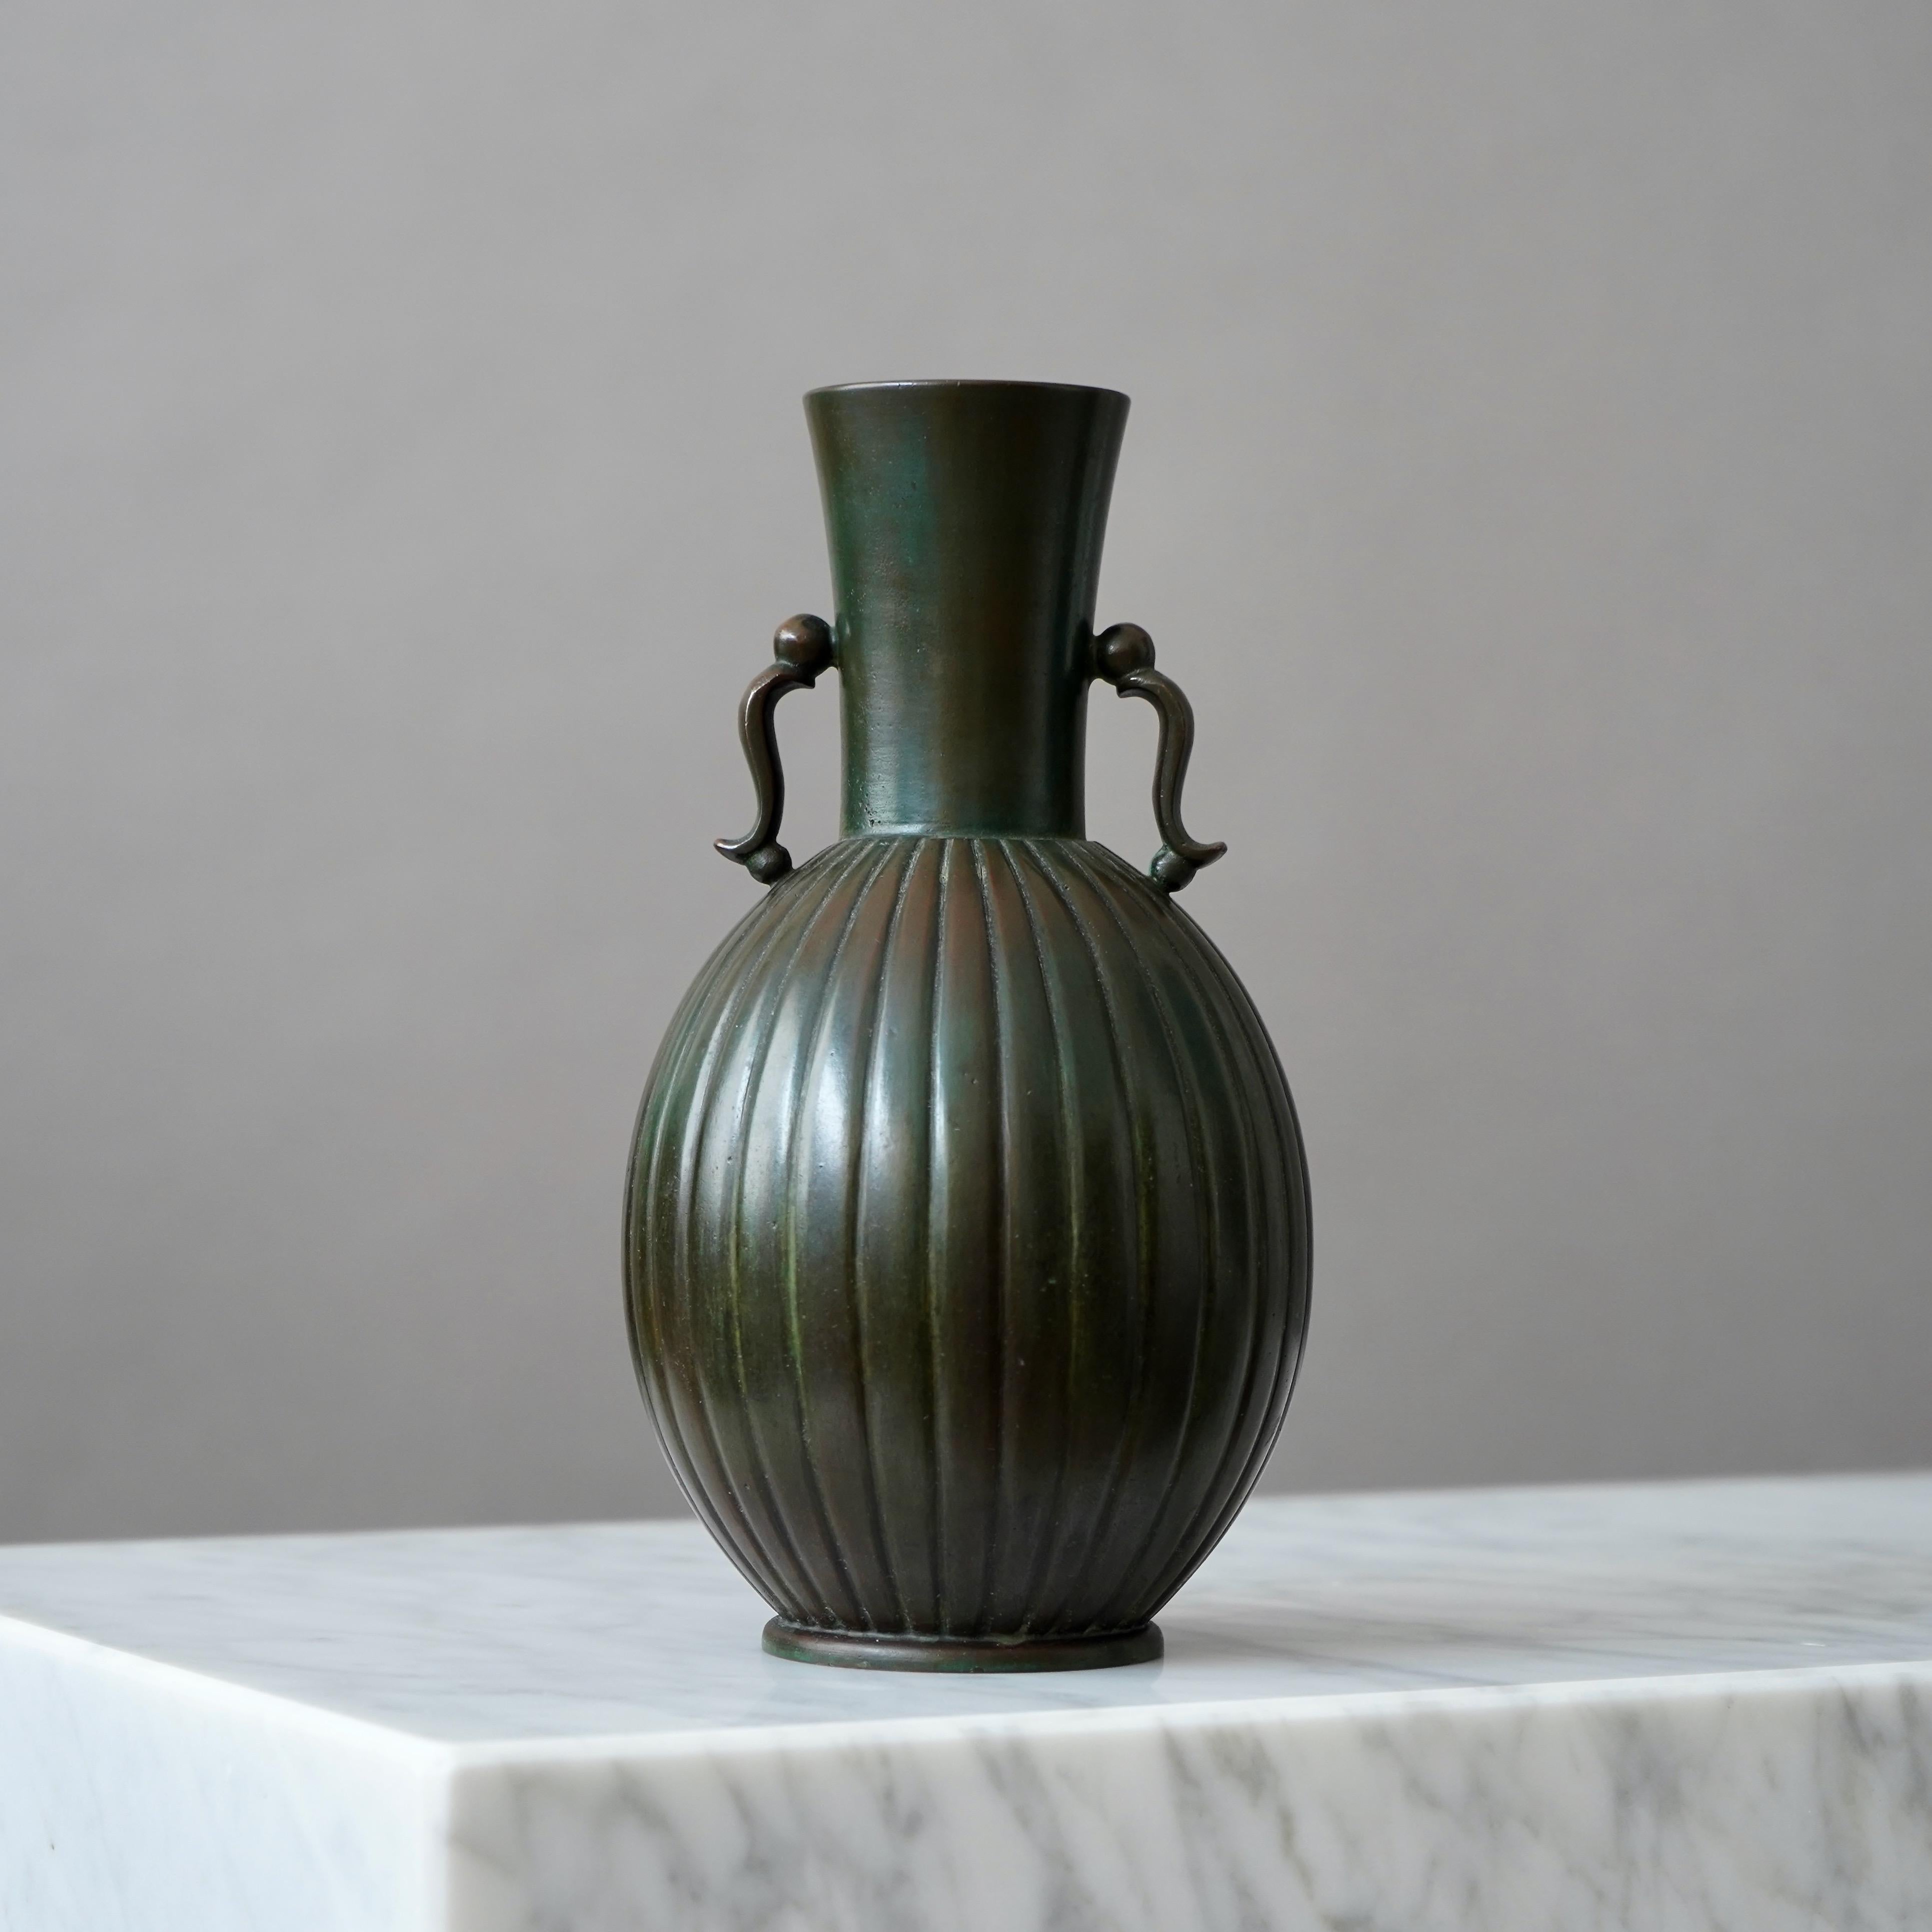 Un magnifique vase en bronze avec une patine étonnante. 
Fabriqué par GAB Guldsmedsaktiebolaget, Suède, années 1930.  

Excellent état.
Estampillé 